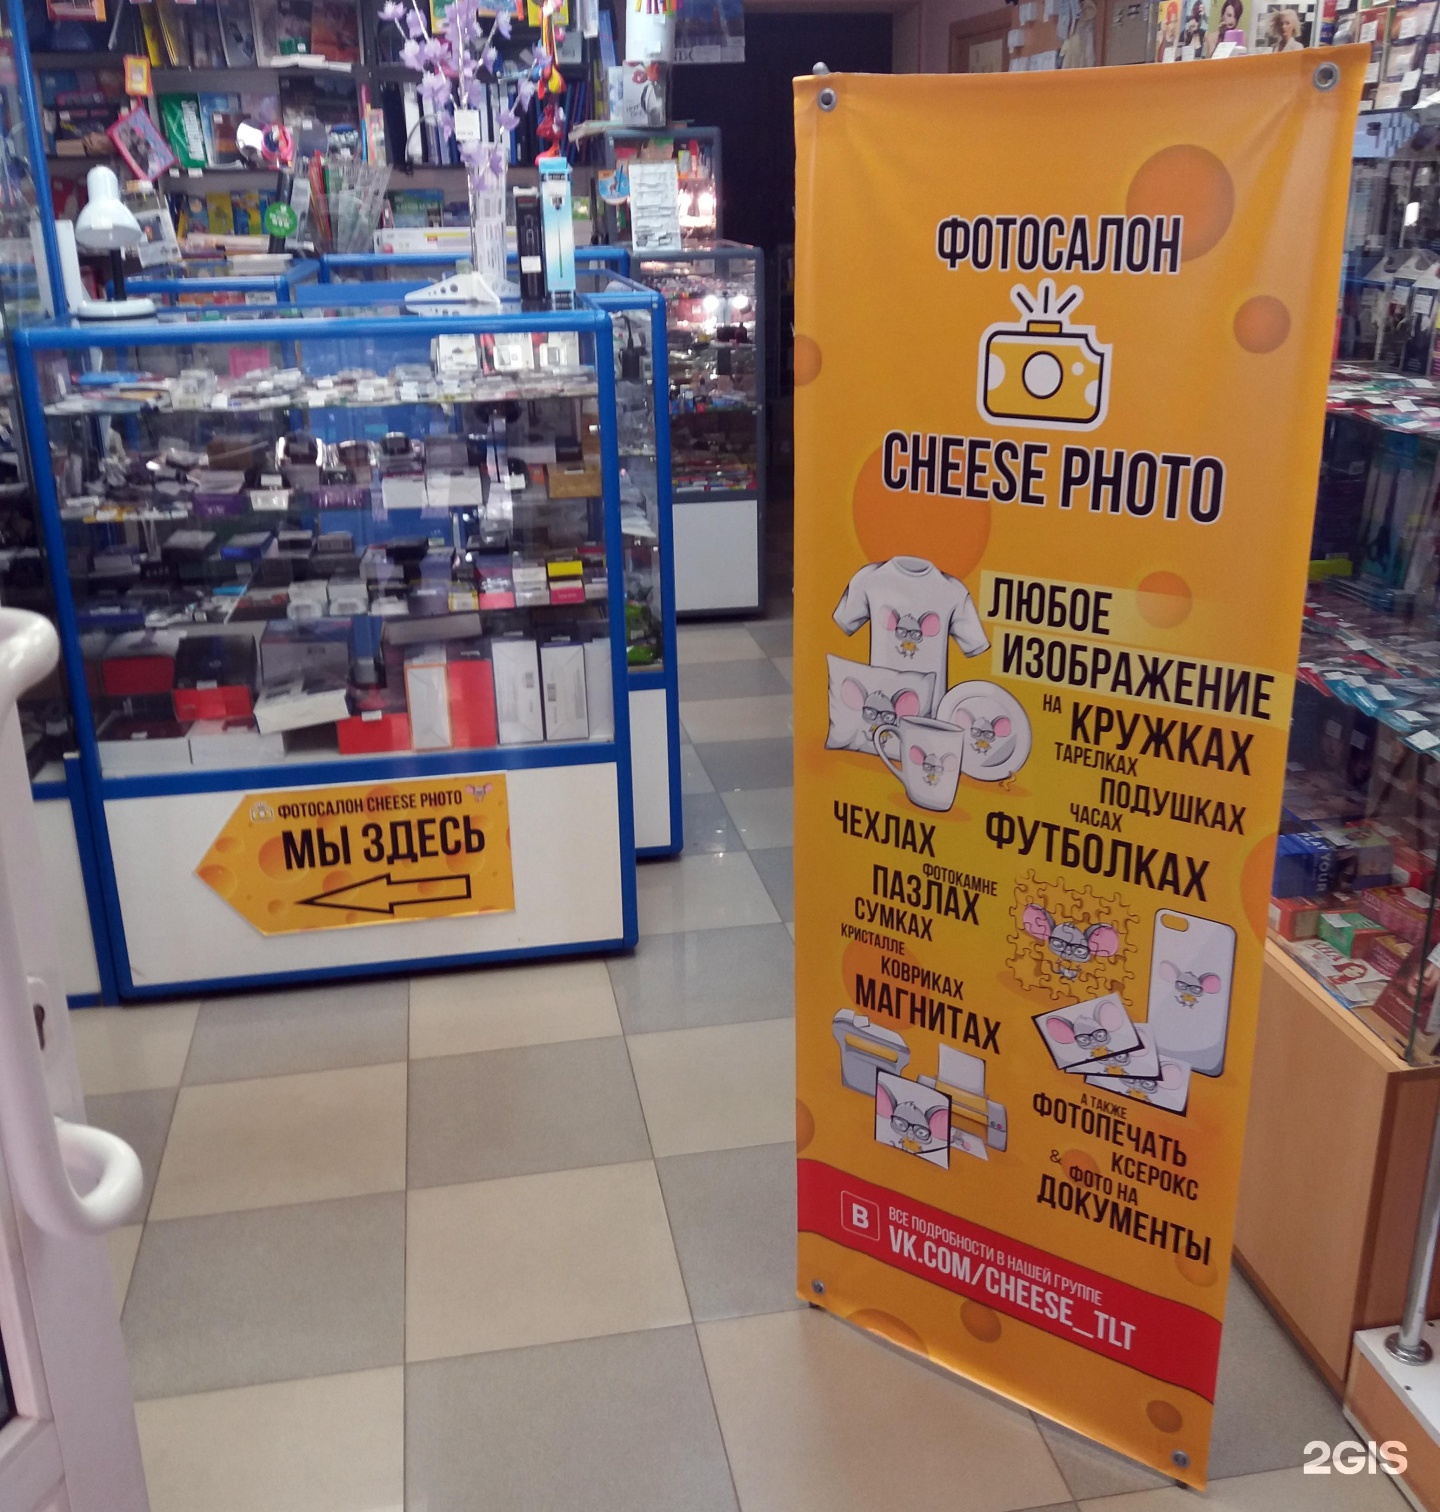 Cheese photo фотосалон